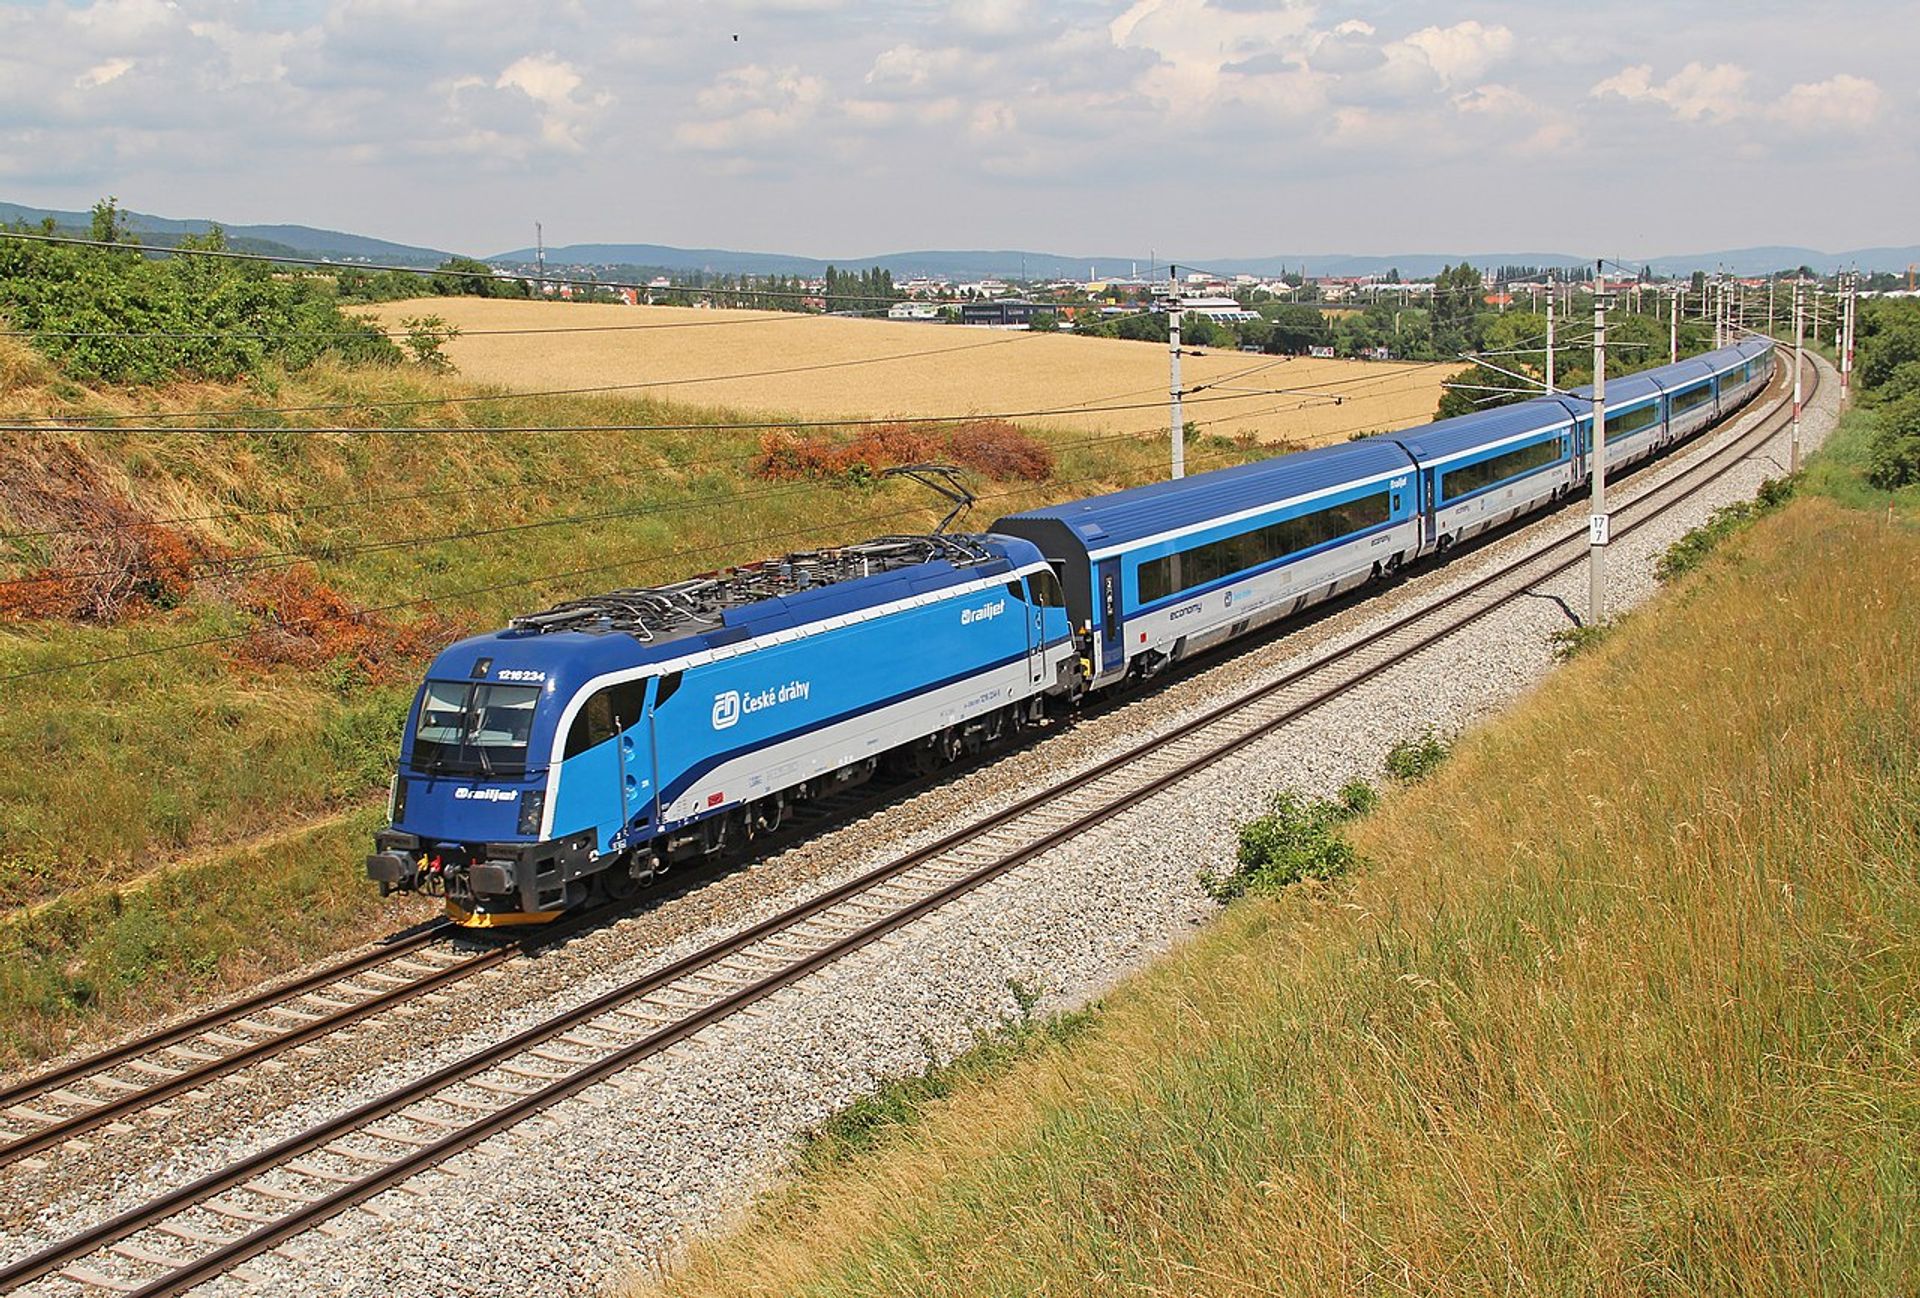 Narodowy czeski przewoźnik České Dráhy zamierza uruchomić połączenie kolejowe Praga - Wrocław